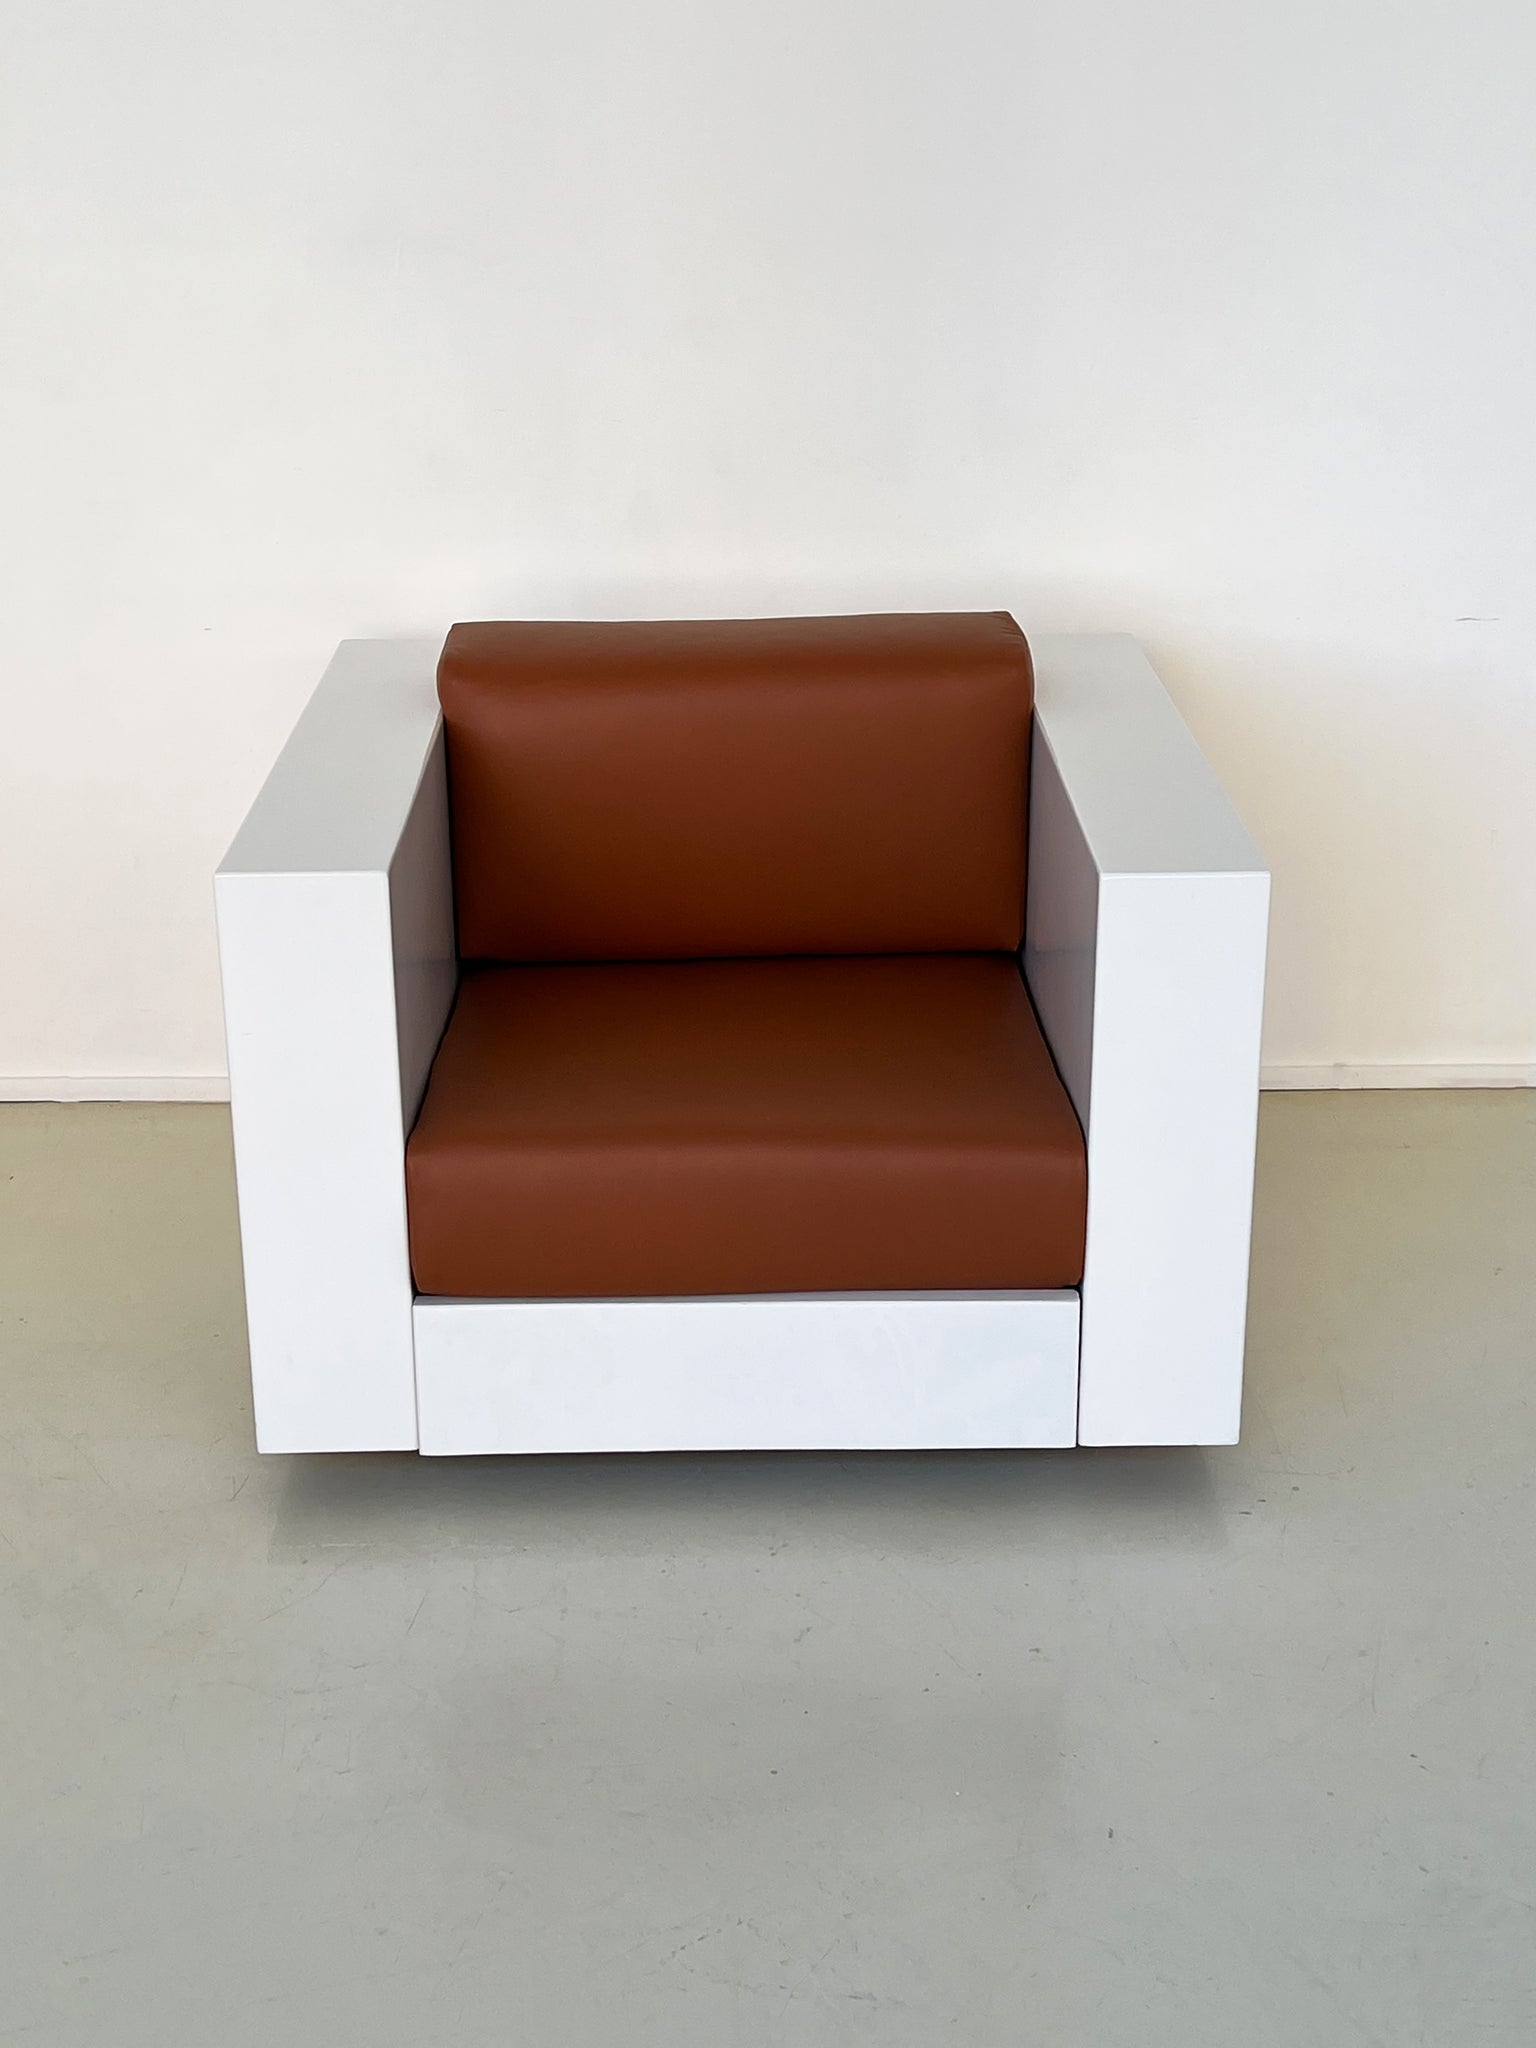 1964 Saratoga Boxy Club Chair by Lella and Massimo Vignelli for Poltronova